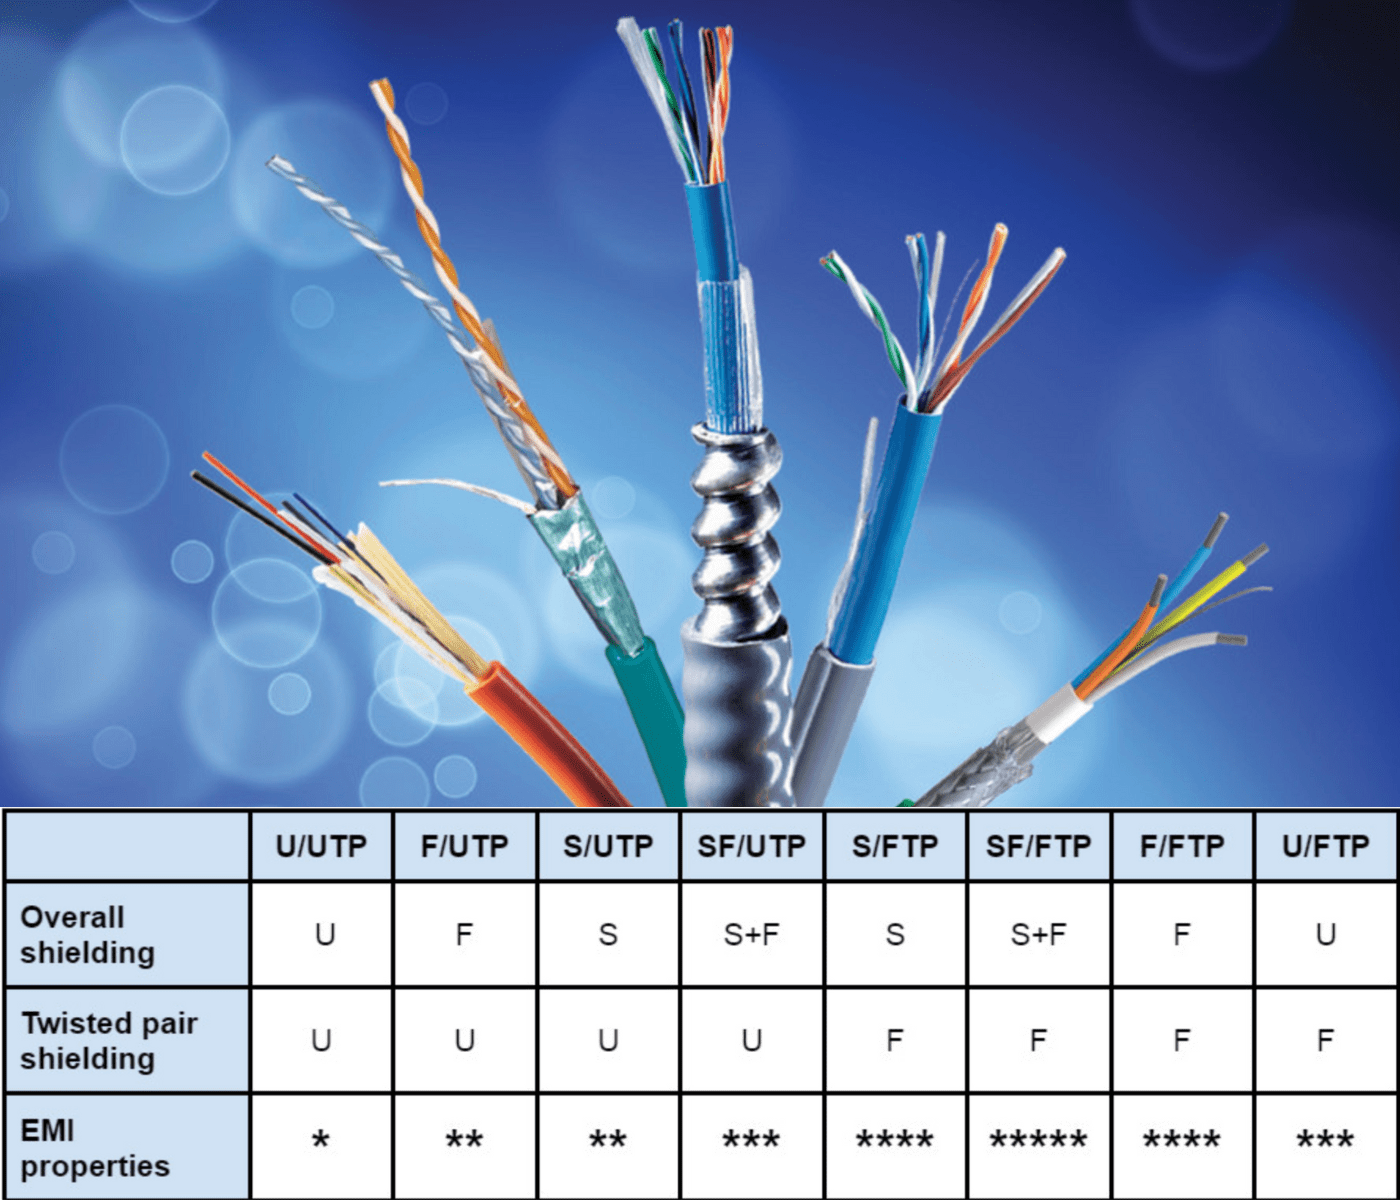 Câbles Ethernet : Comment choisir le bon pour votre connexion